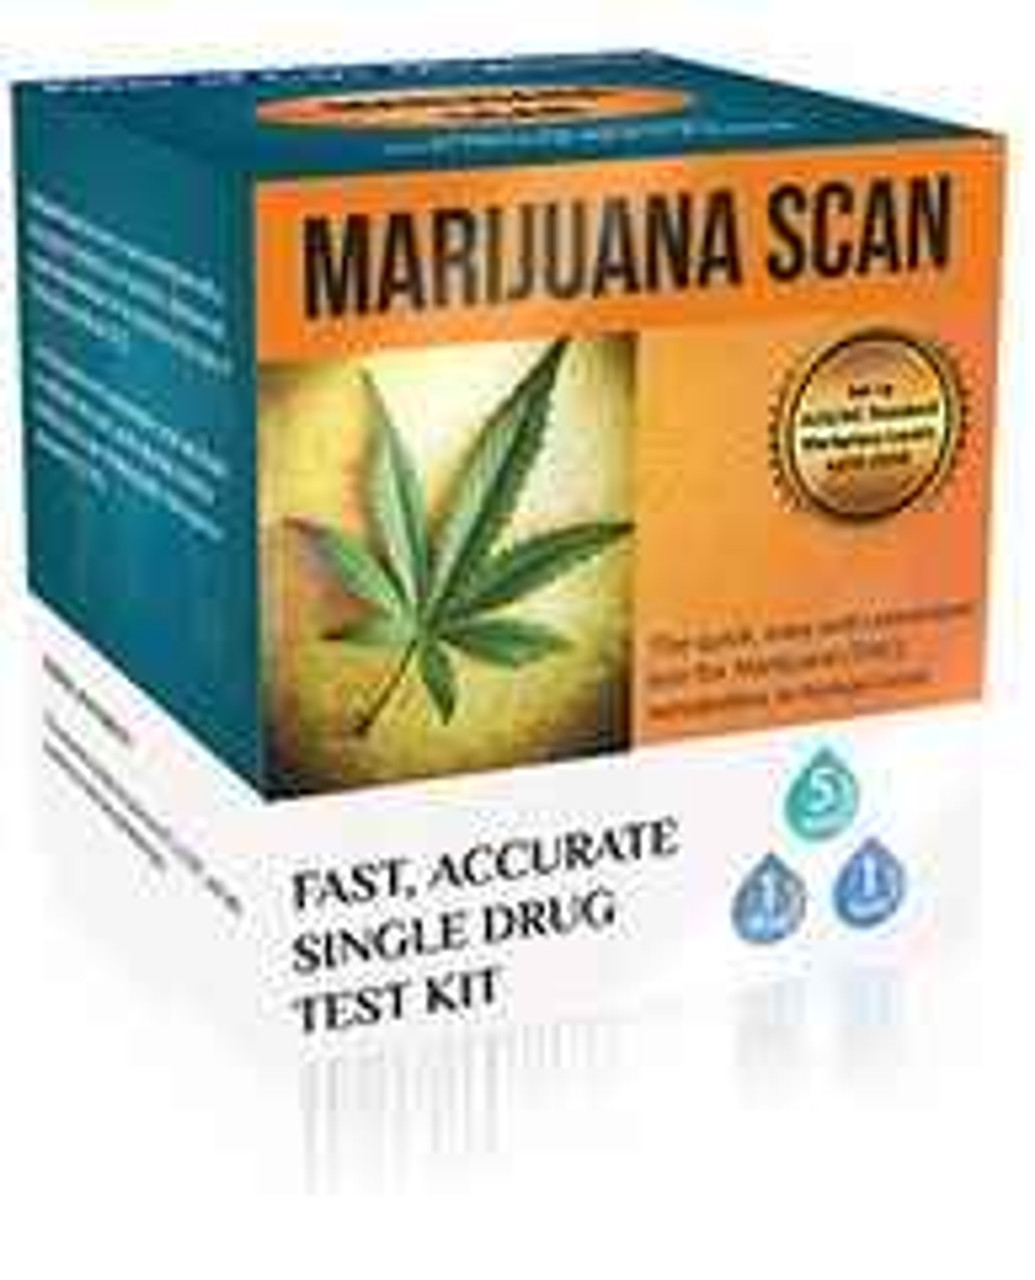 Marijuana Scan home drug test kit 1 kit - SuperPharmacyPlus